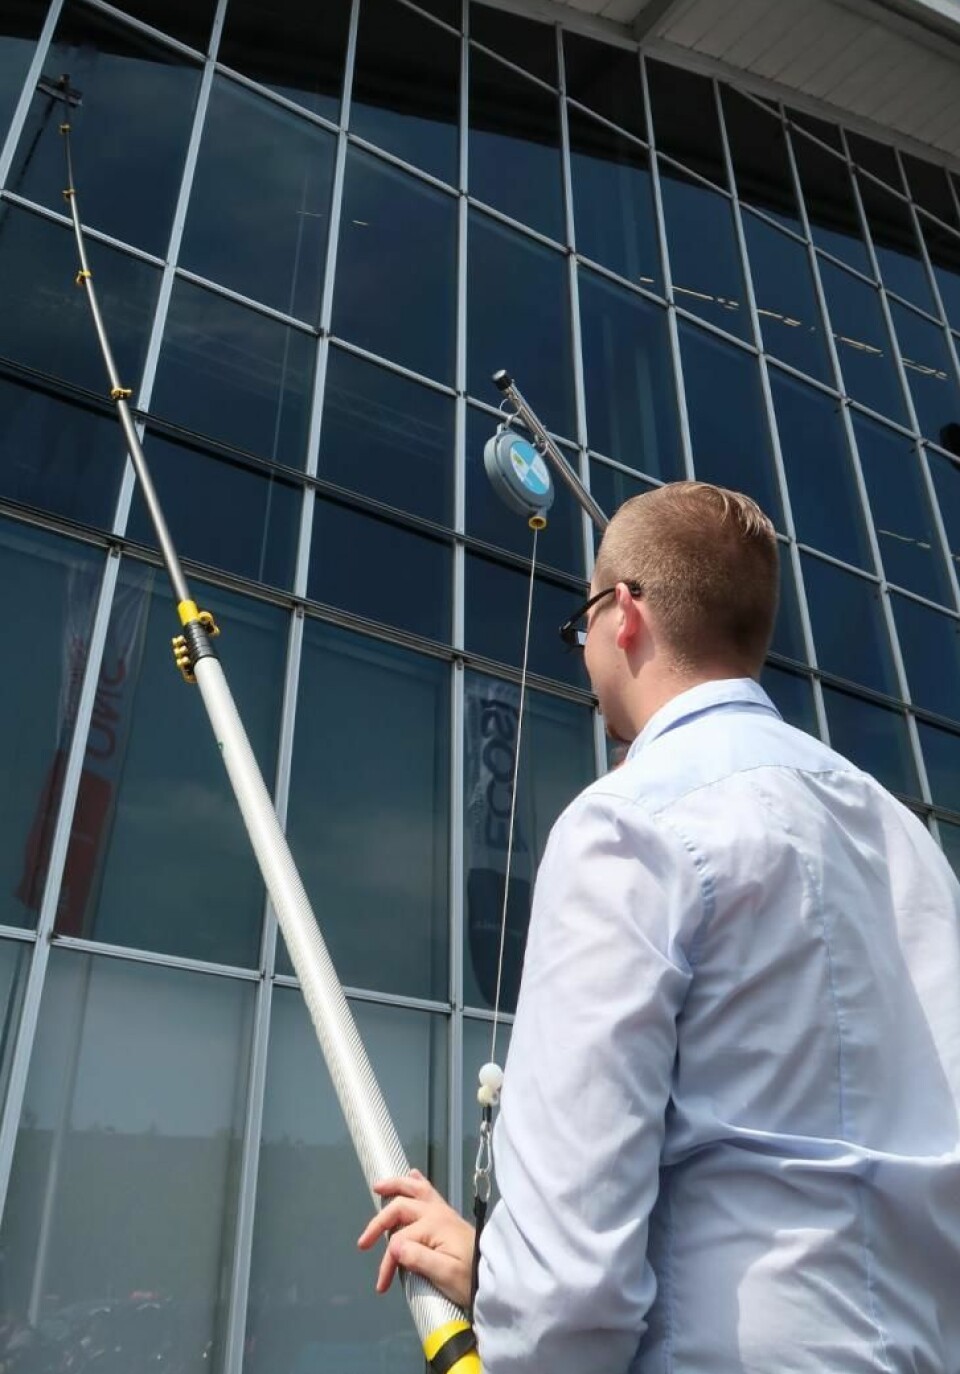 Bilde av en person som vasker vinduer i høyden ved hjelp av et rentvannssystem og teleskopstenger.